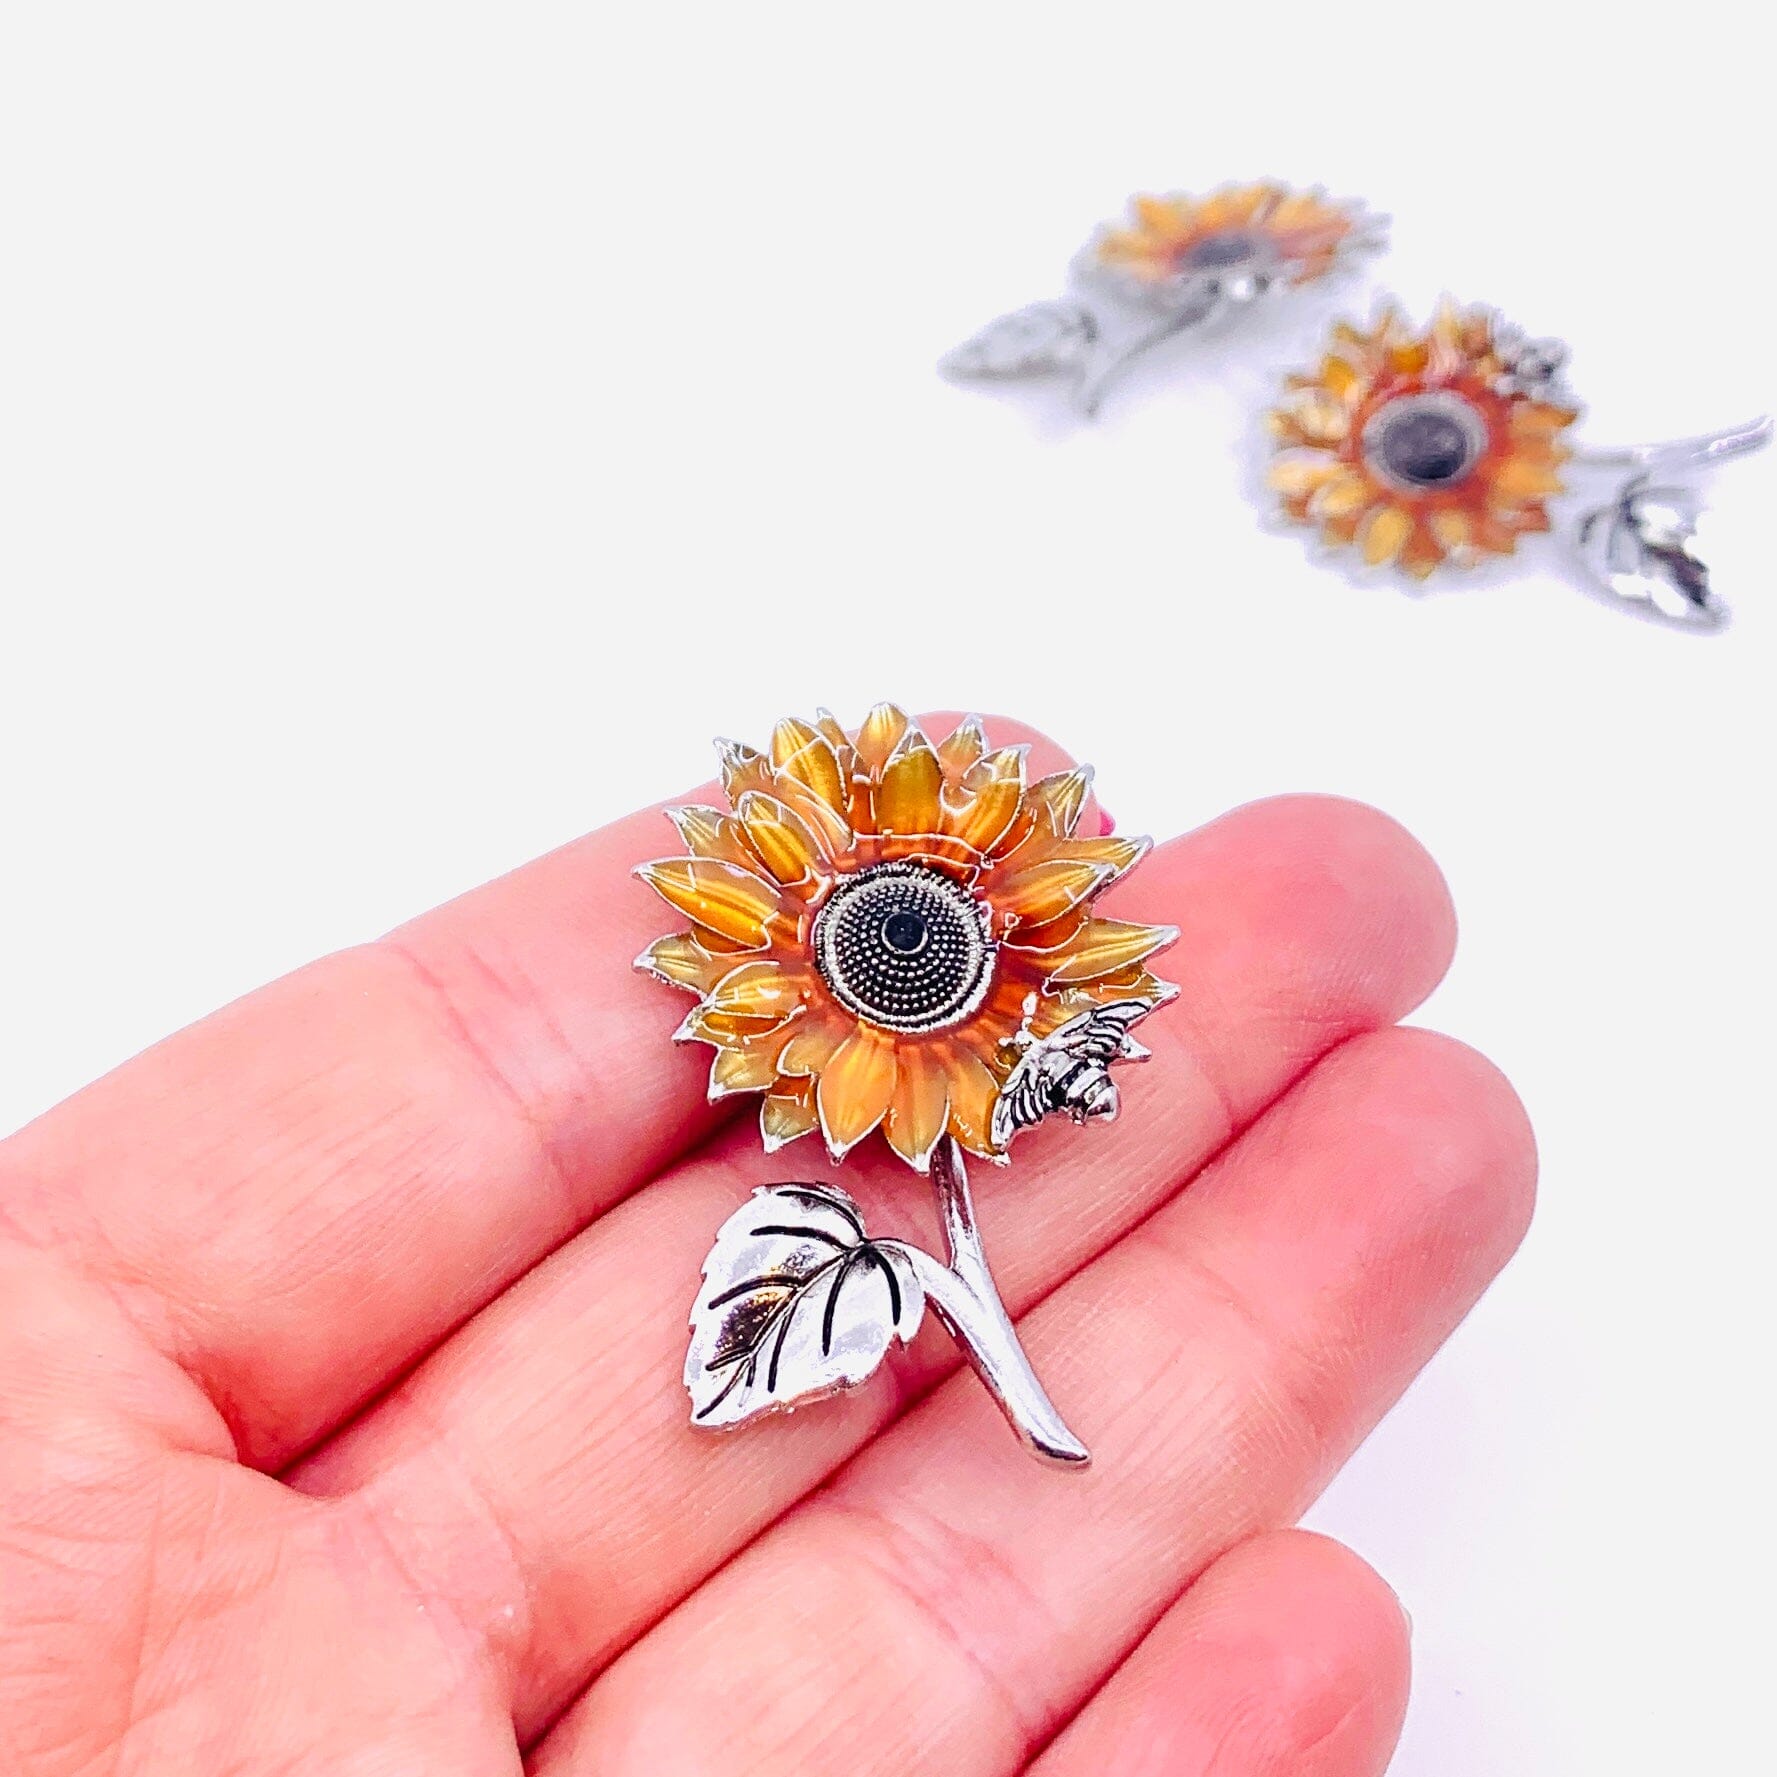 Sunflower Wishes Pocket Charm PT41 Miniature GANZ 